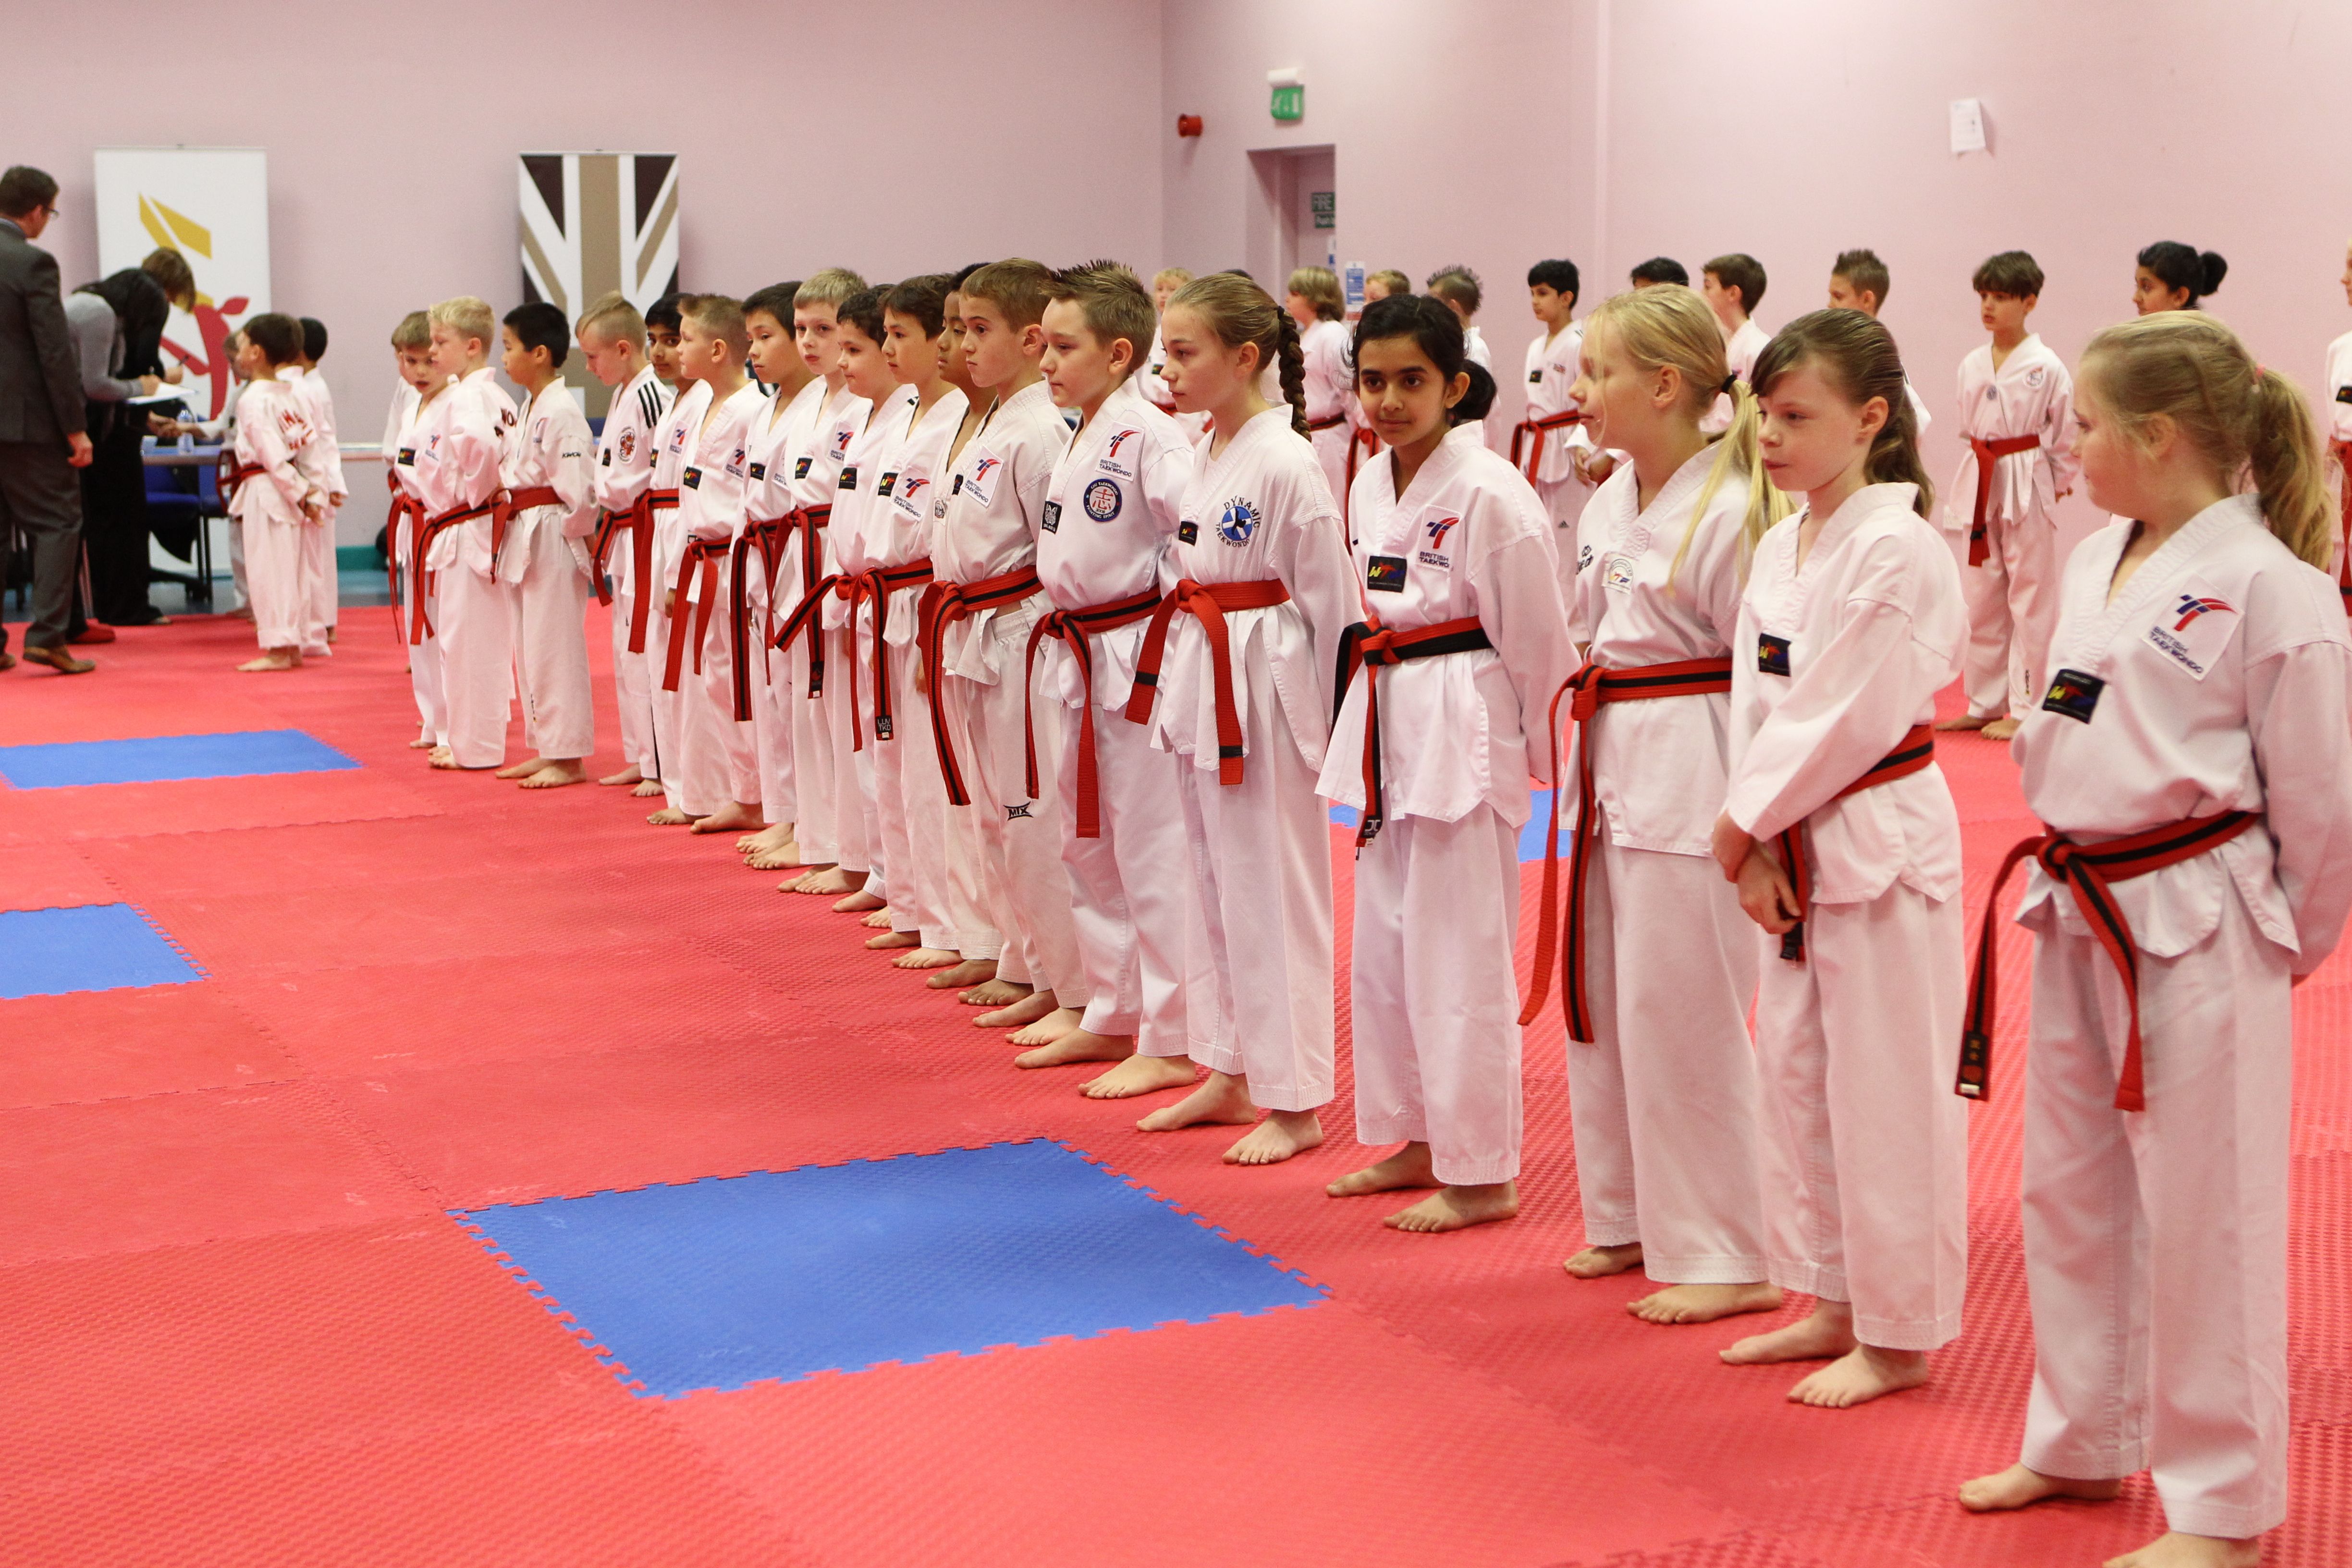 A row of children ready to do Taekwondo 